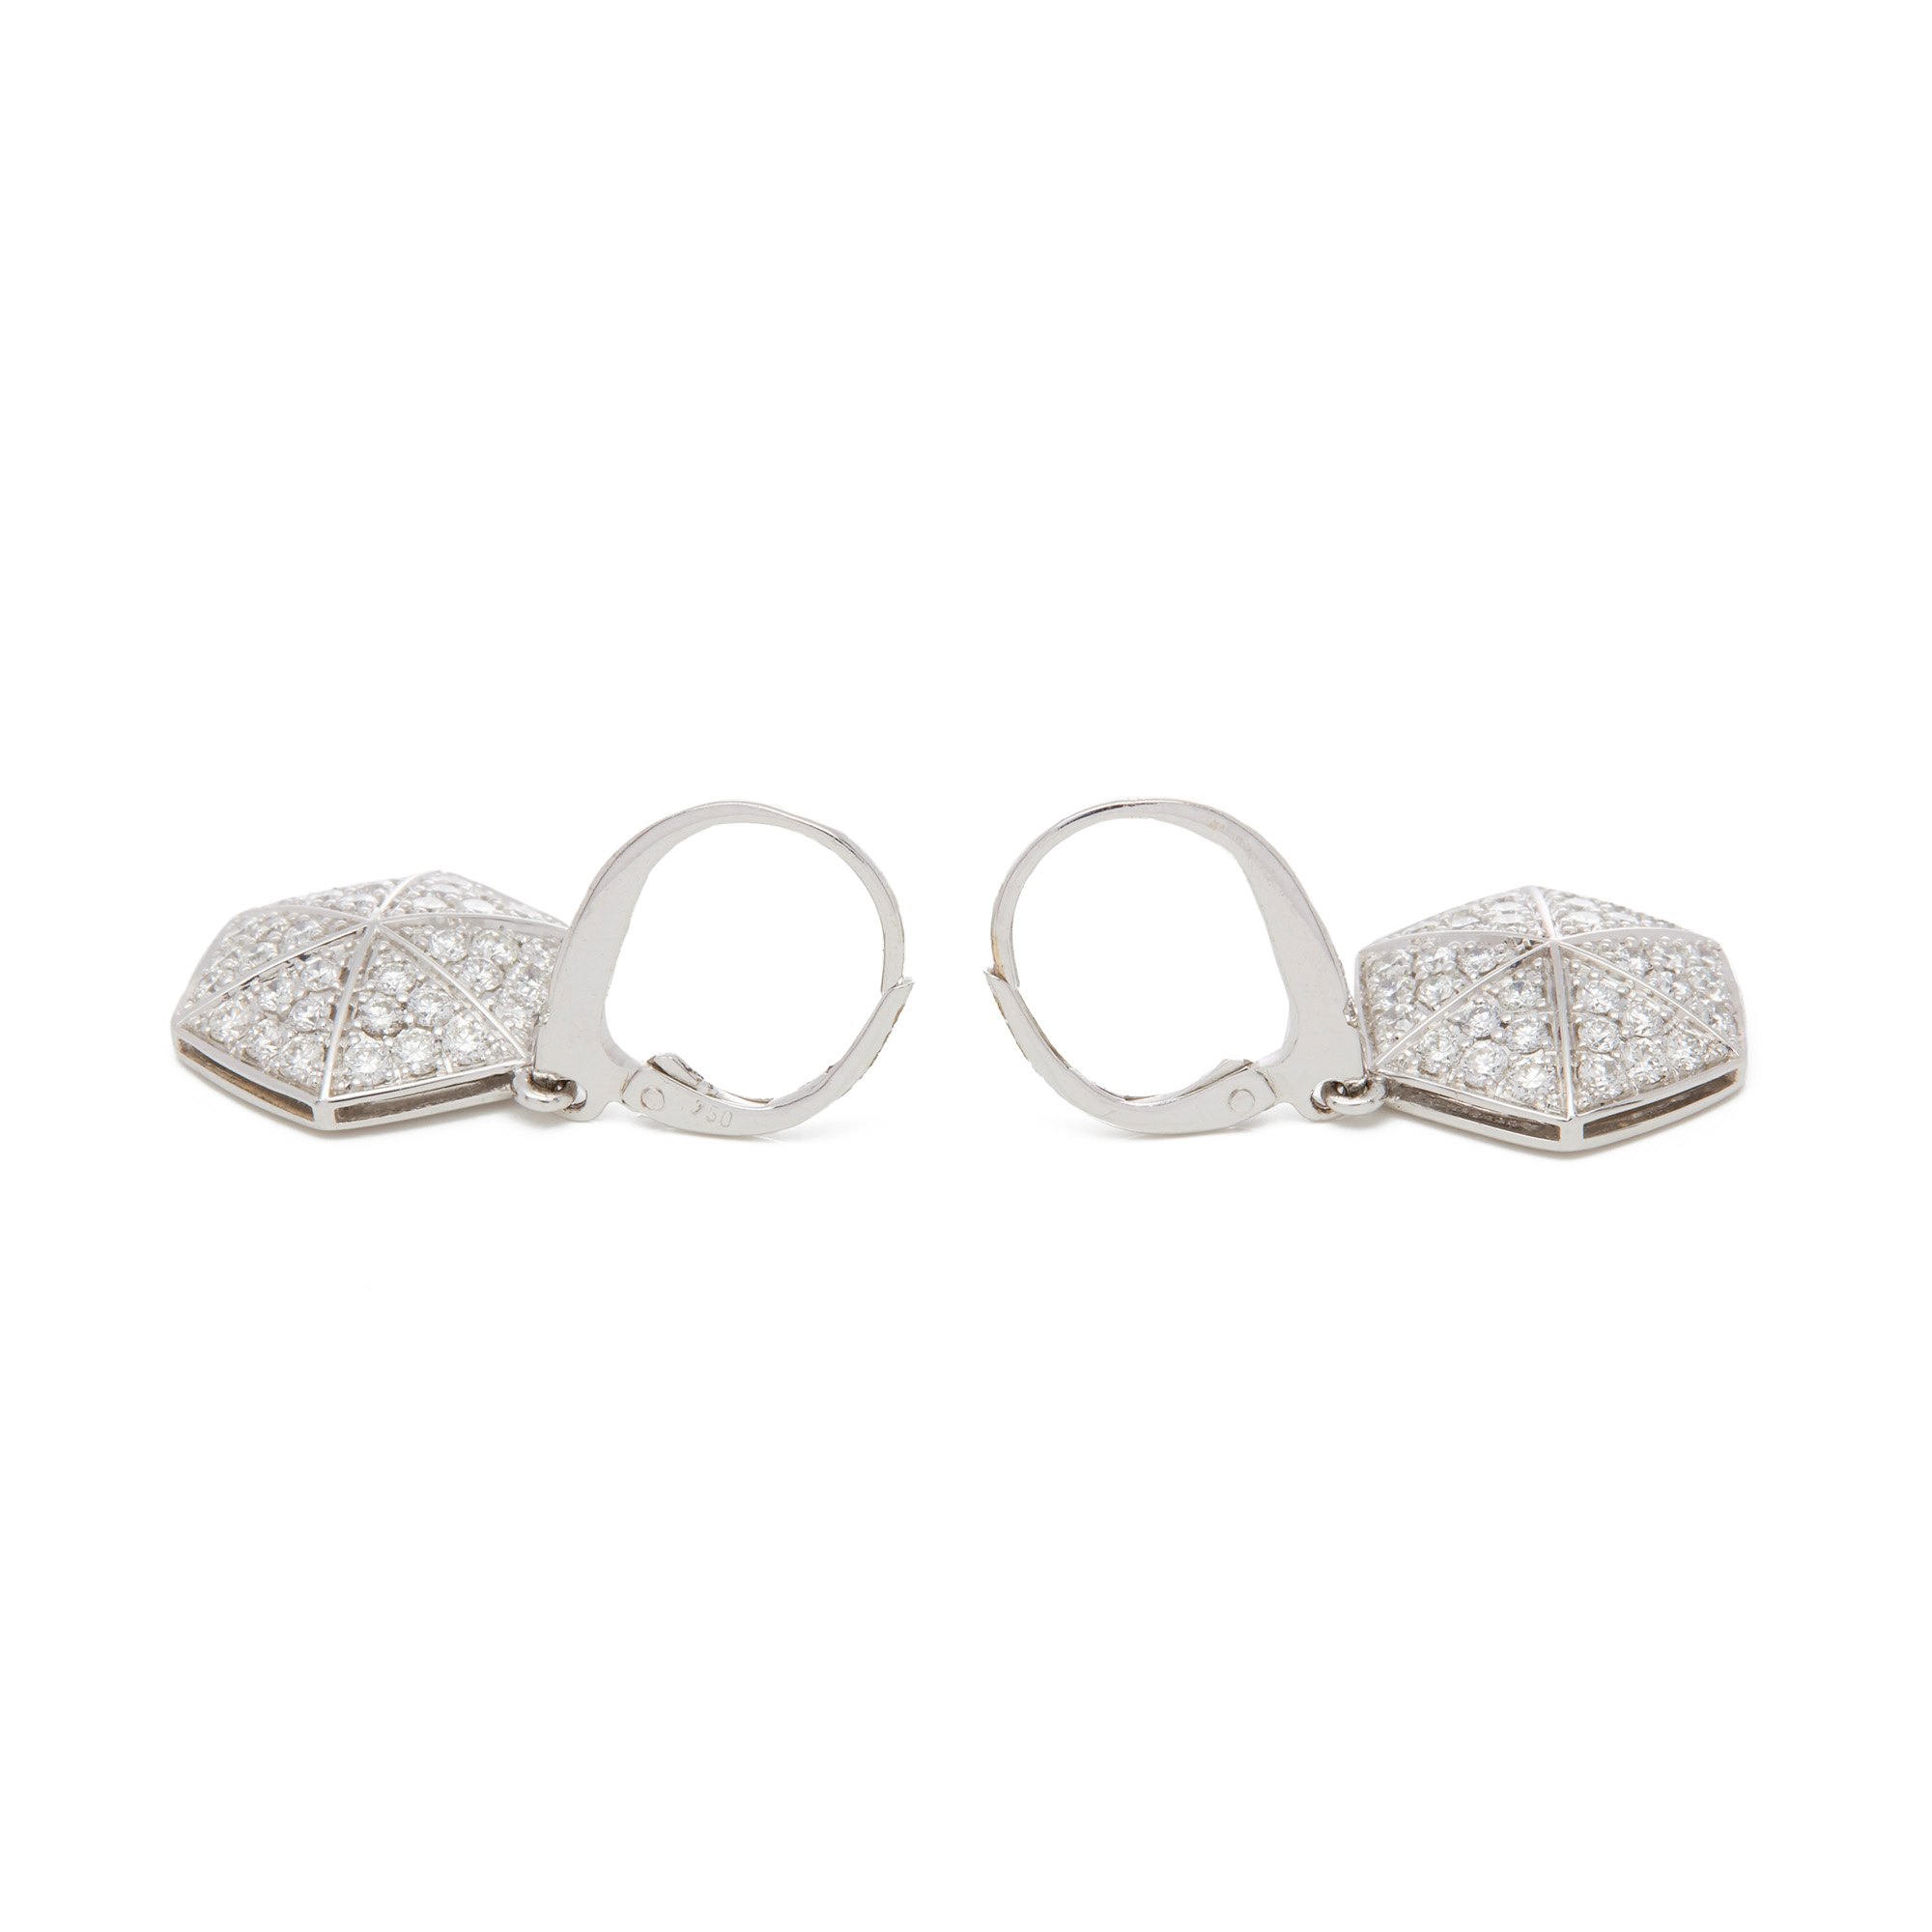 Stephen Webster 18ct White Gold full Pave Diamond Earrings